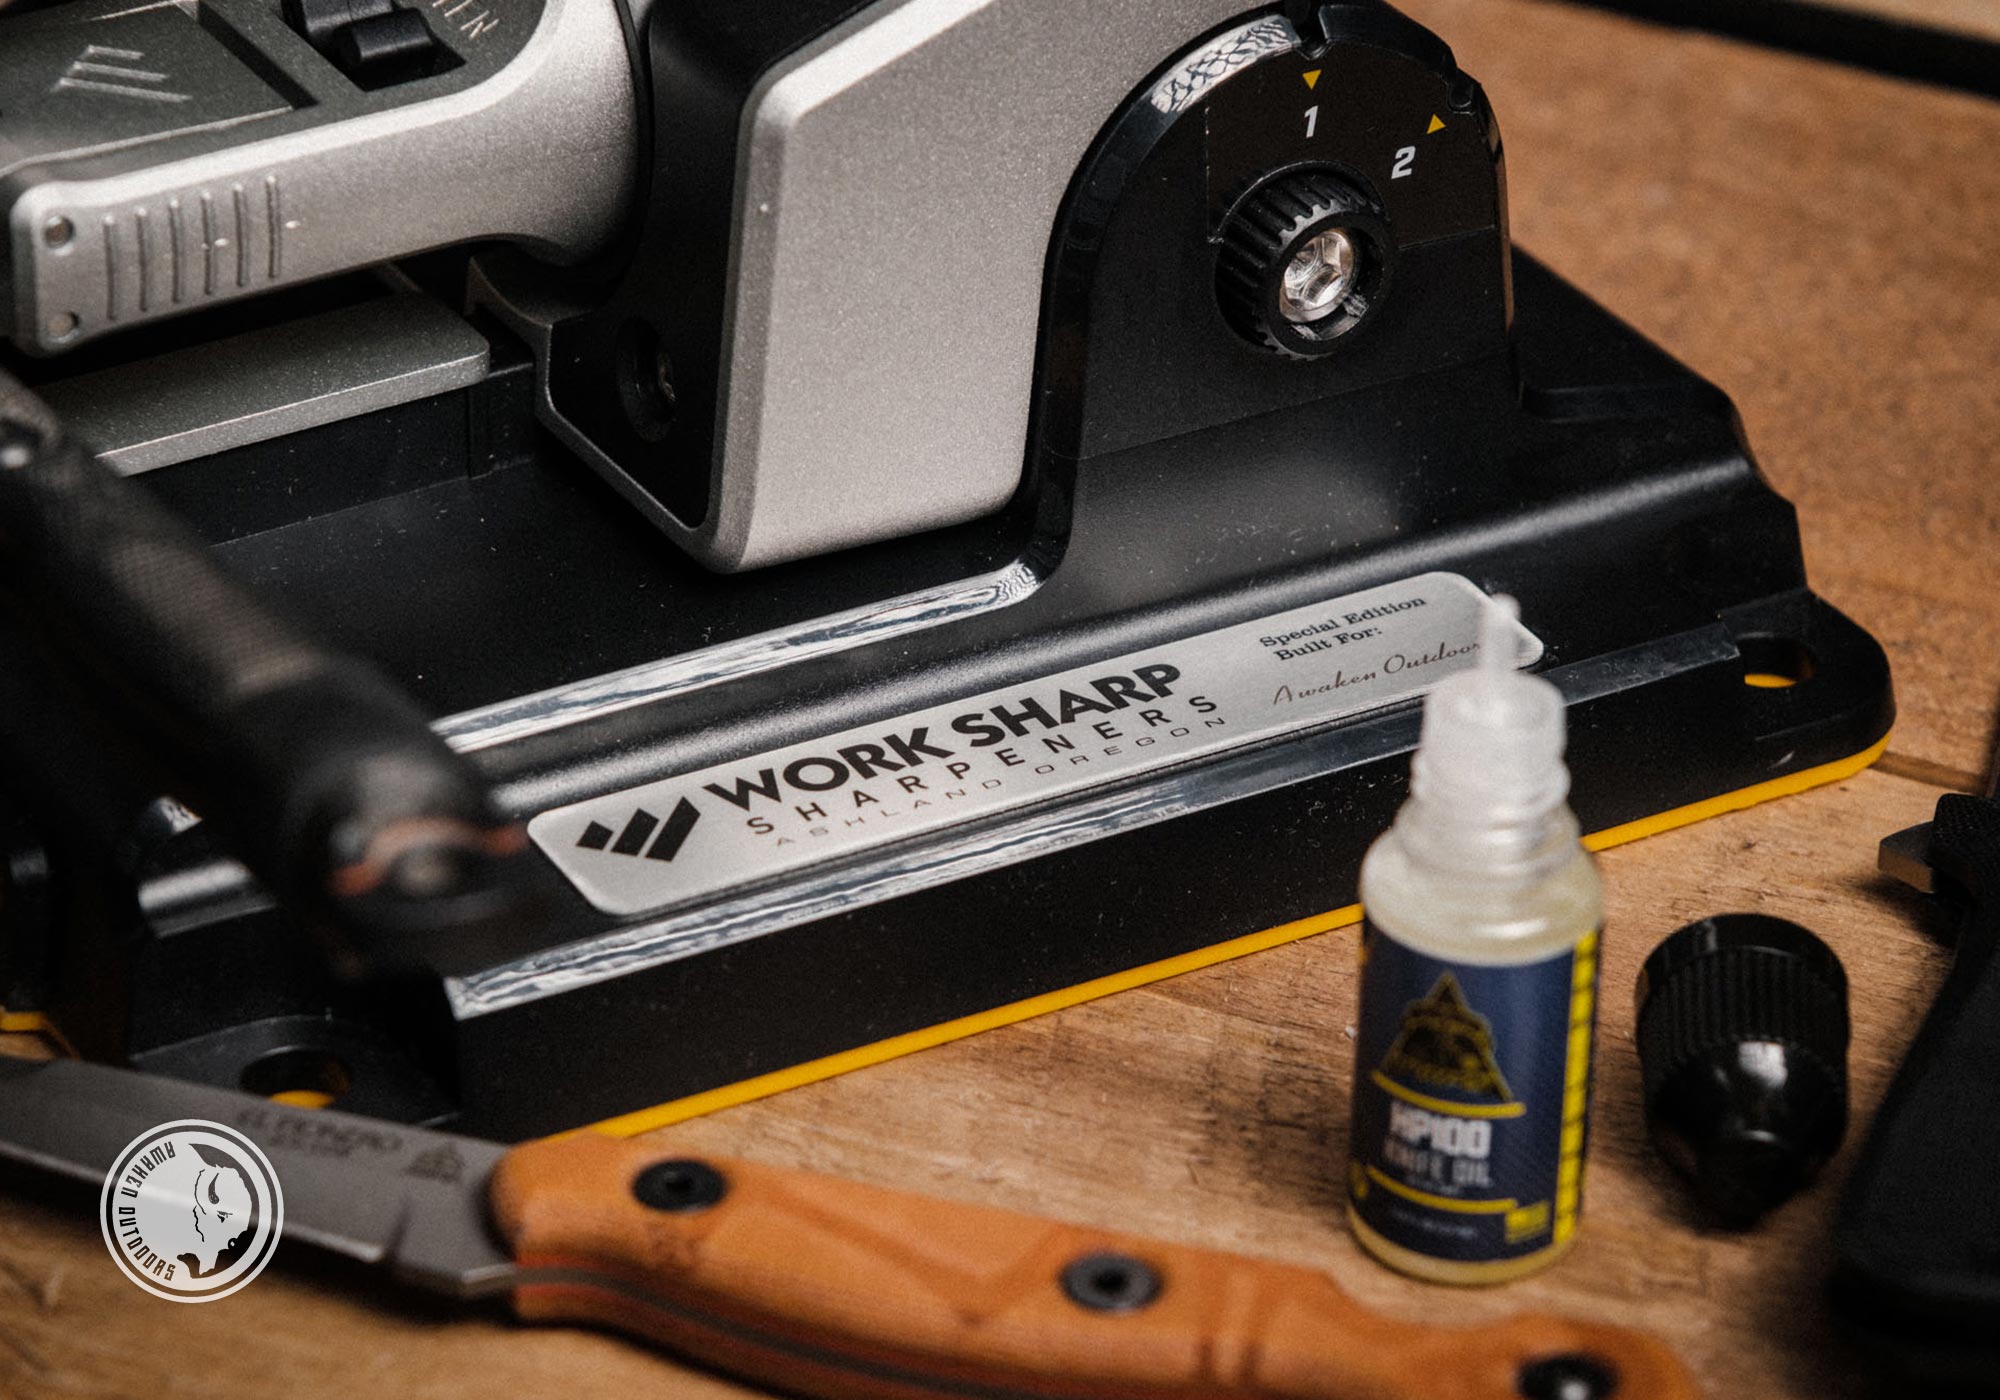 Work Sharp Precision Adjust Knife Sharpener Review